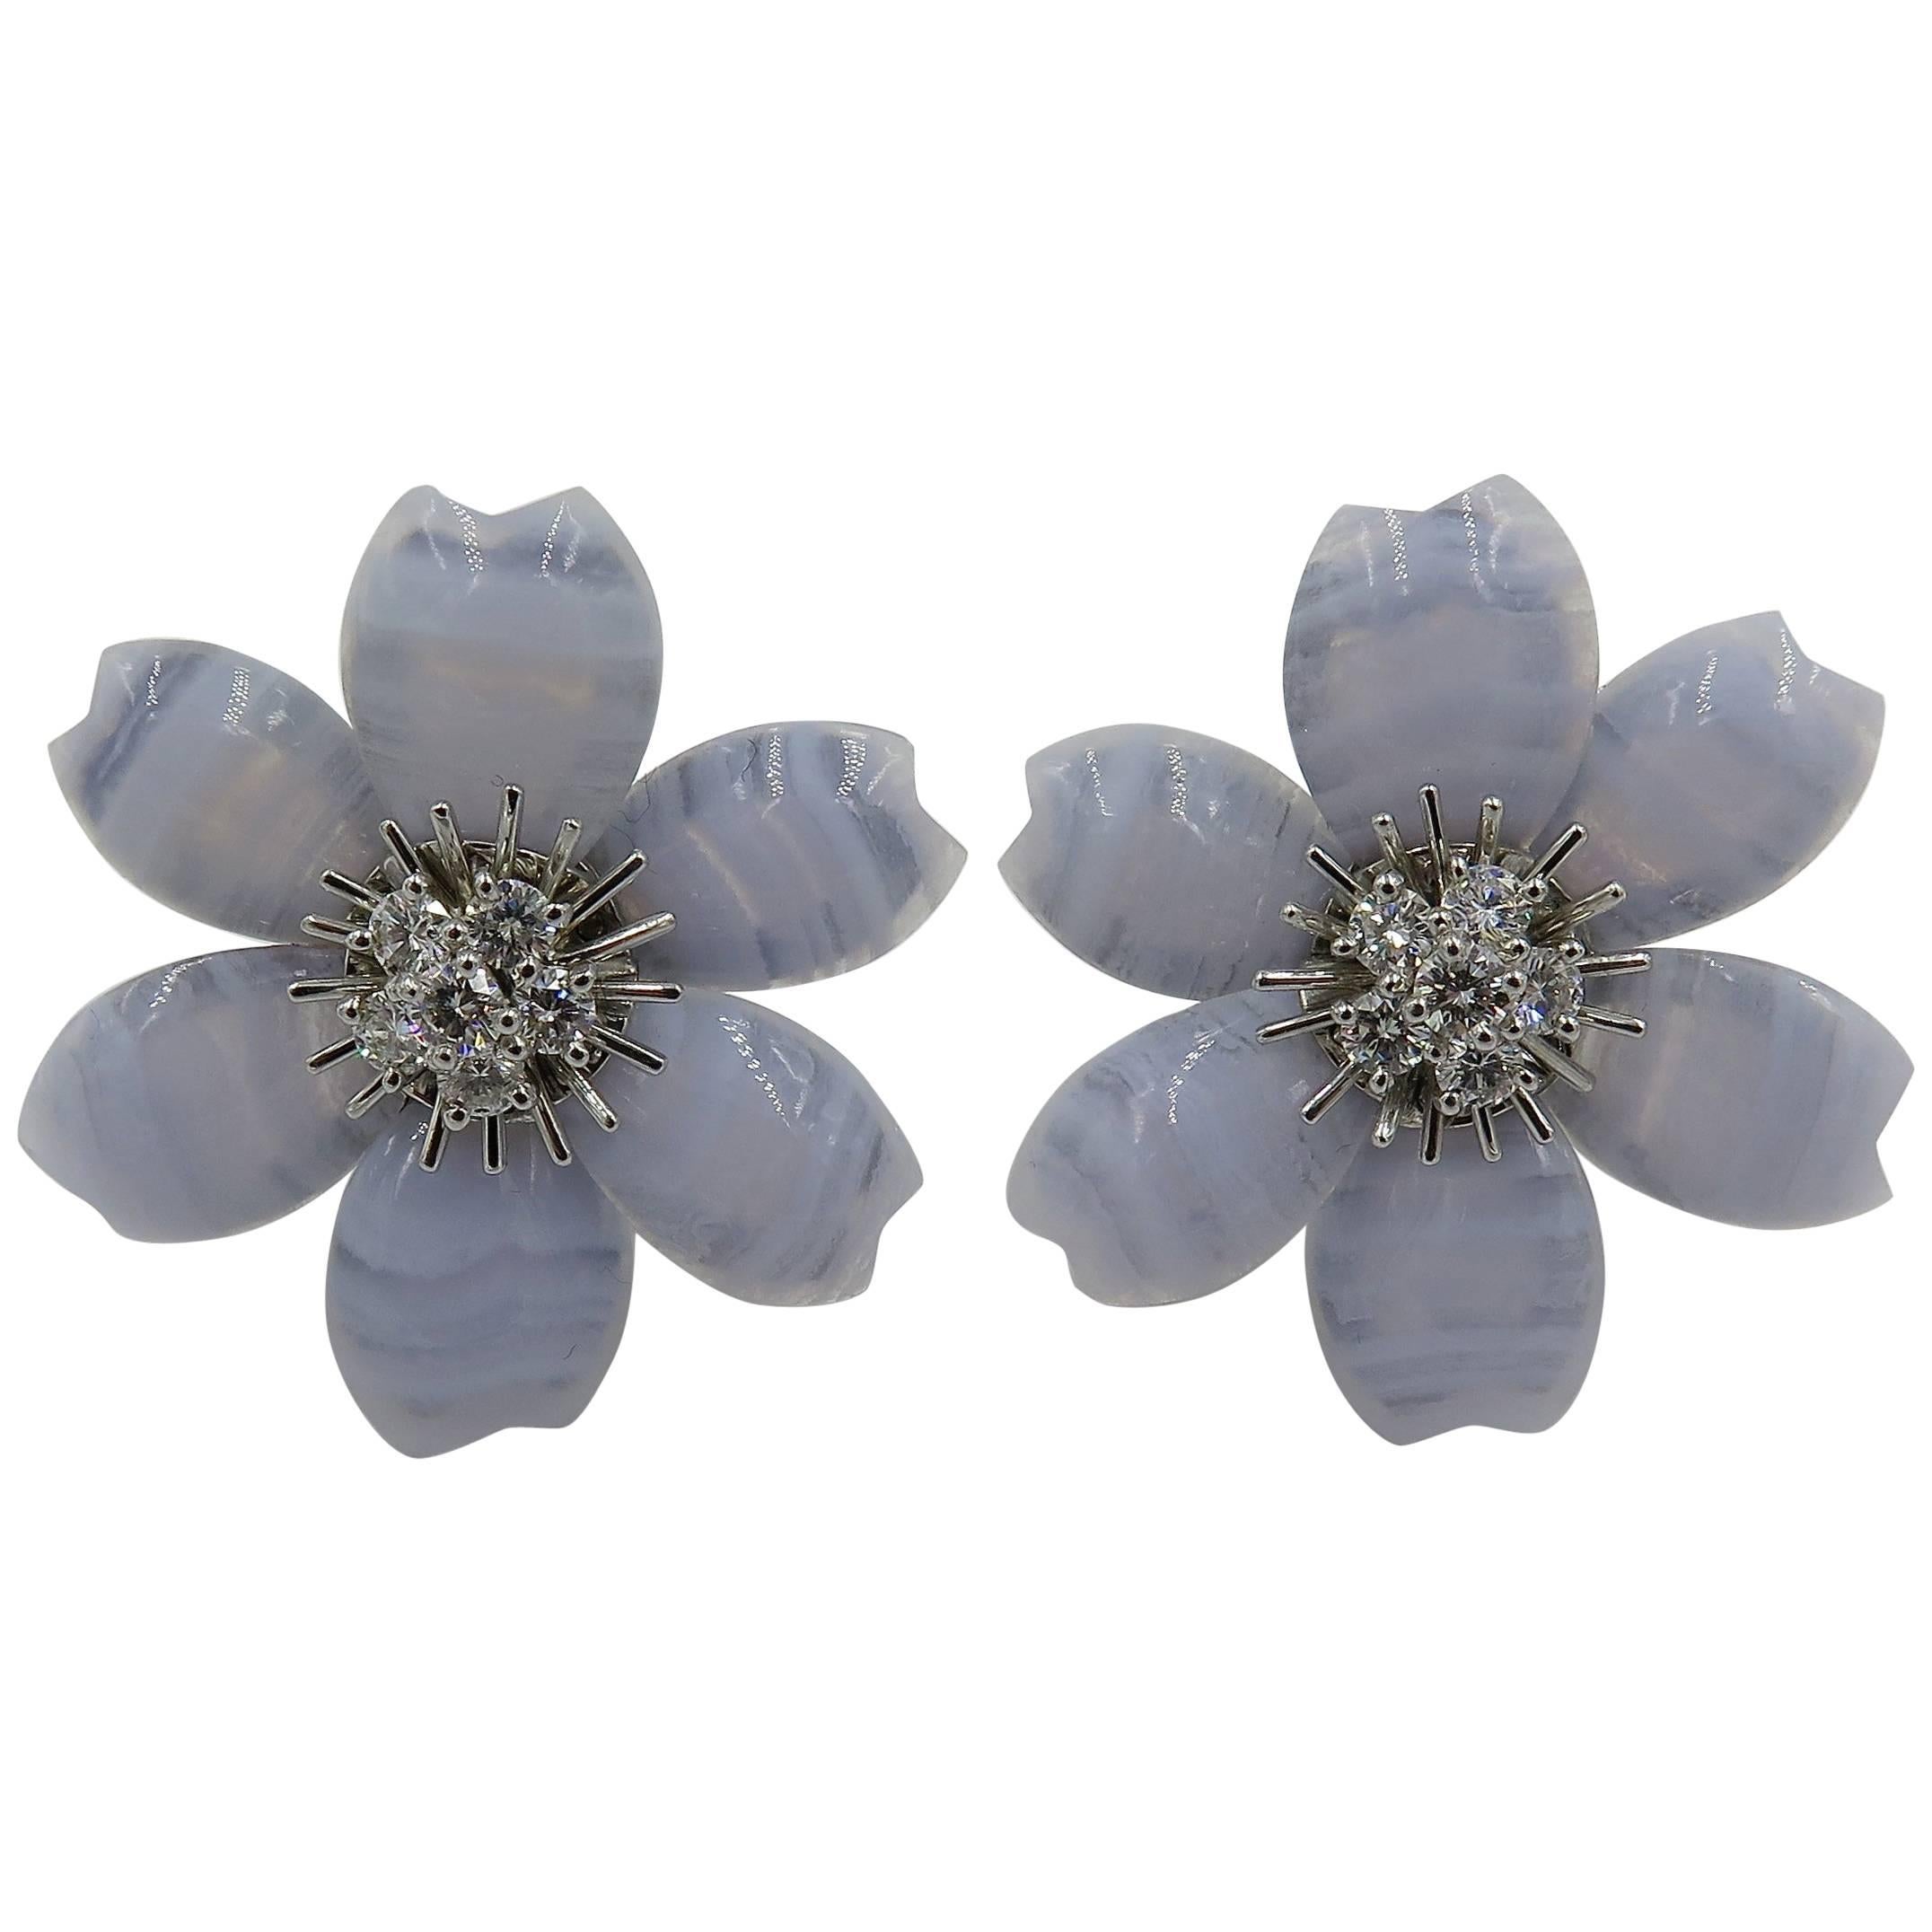 Van Cleef & Arpels Blue Lace Agate and Diamond Rose de Noel Earrings